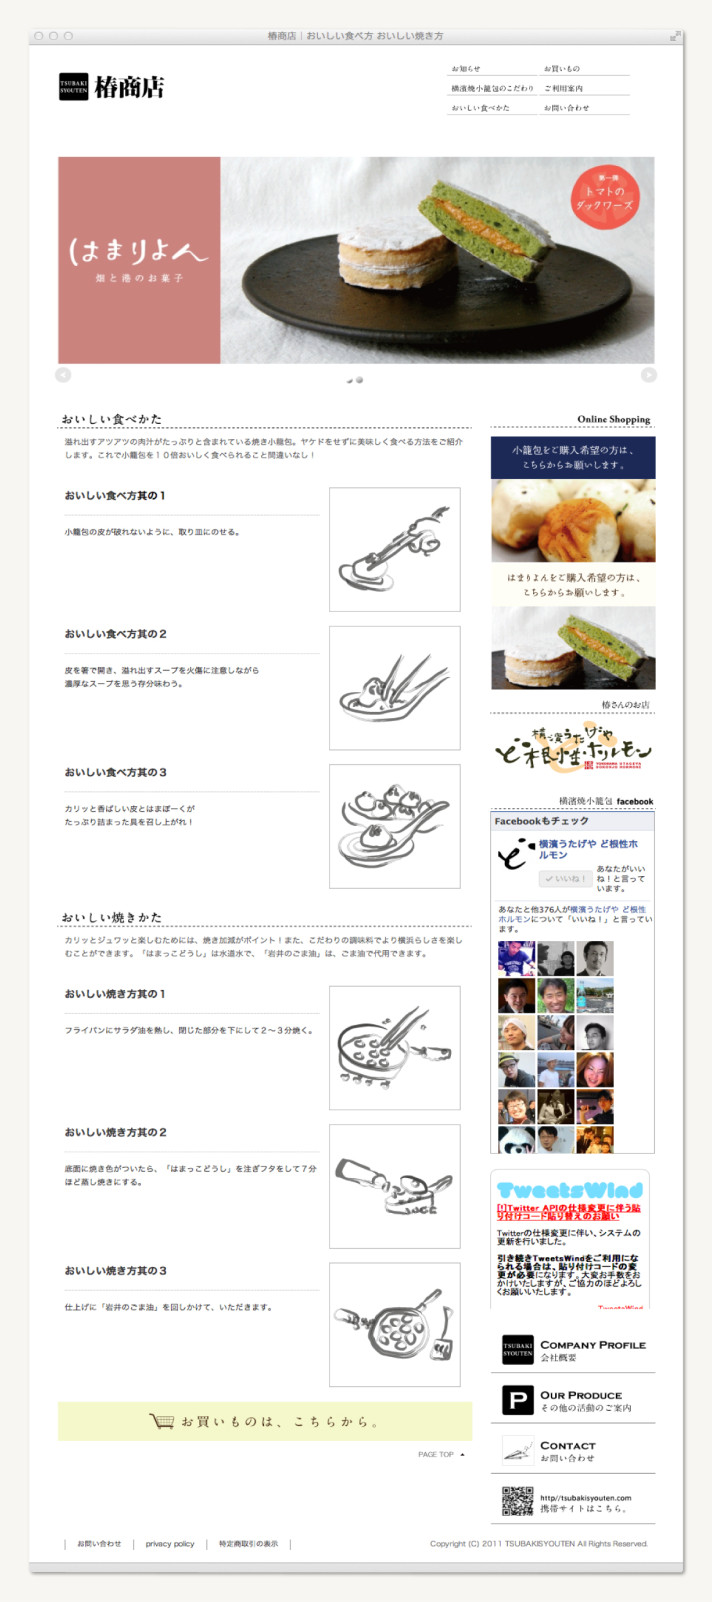 横濱焼小籠包 椿商店 ウェブサイト〈webデザイン ロゴデザイン〉